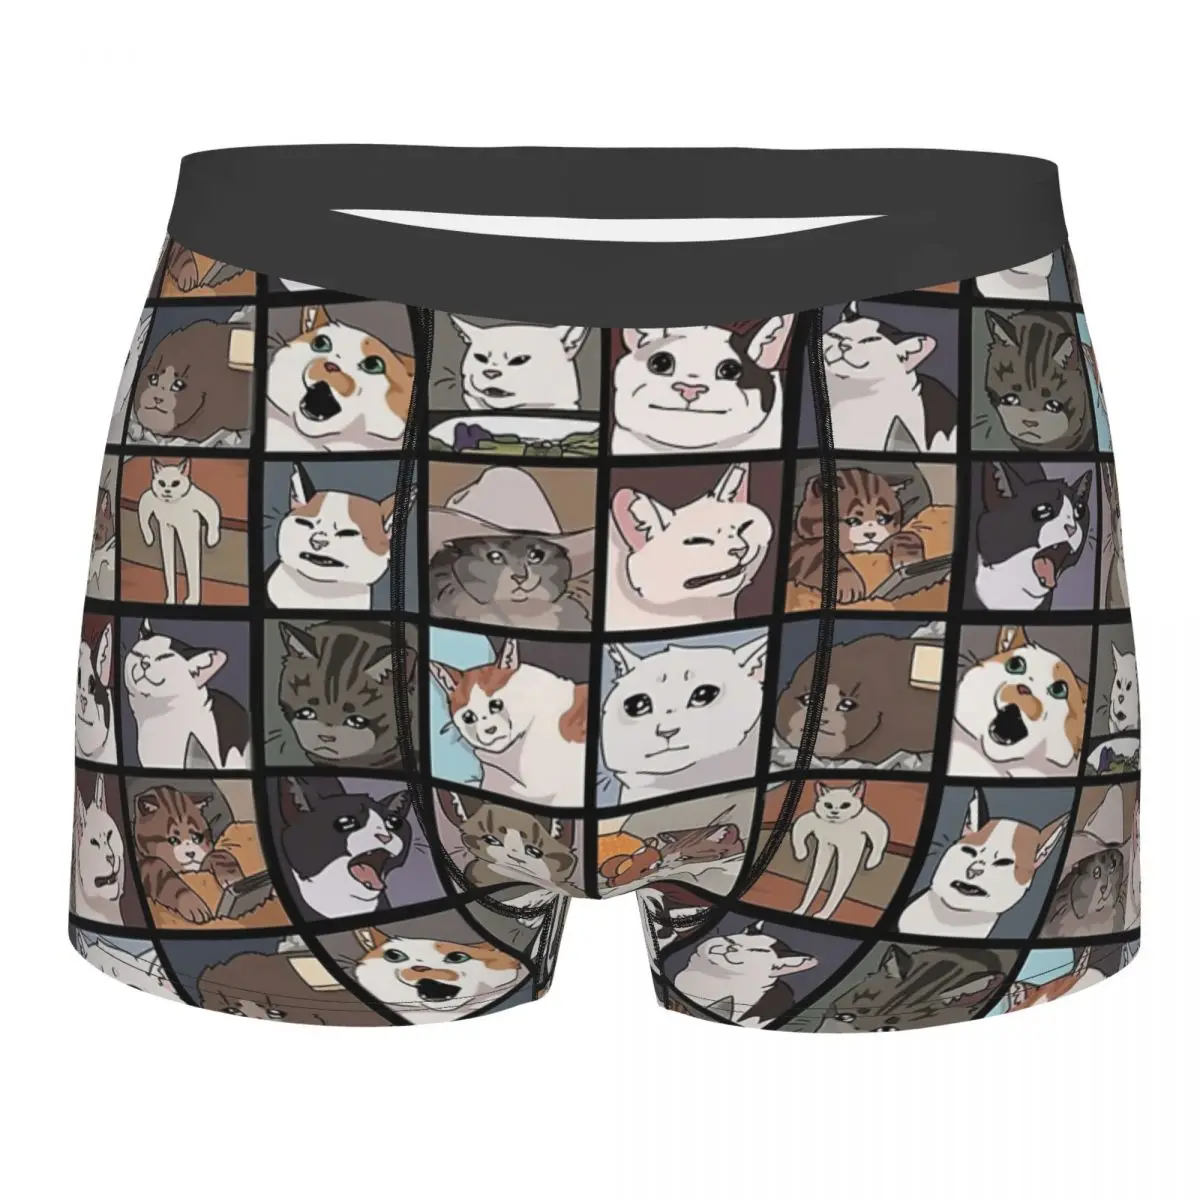 Meme Cats 2.0 Underpants Breathbale Panties Male Underwear Print Shorts Boxer Briefs